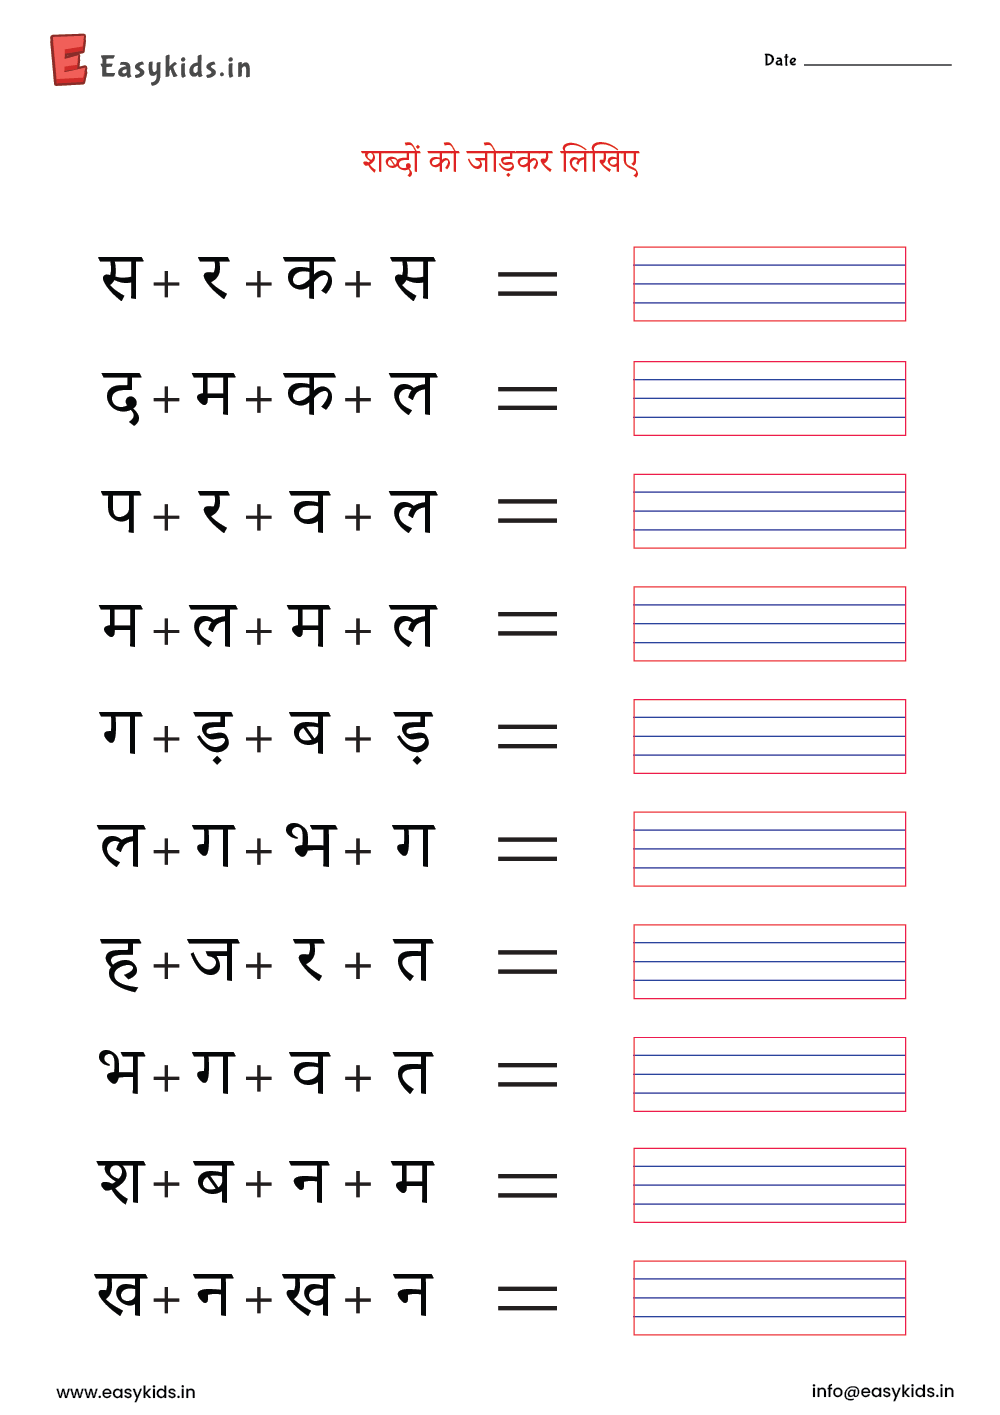 worksheet-hindi-ukg-worksheet-by-easy-kids-easykids-in